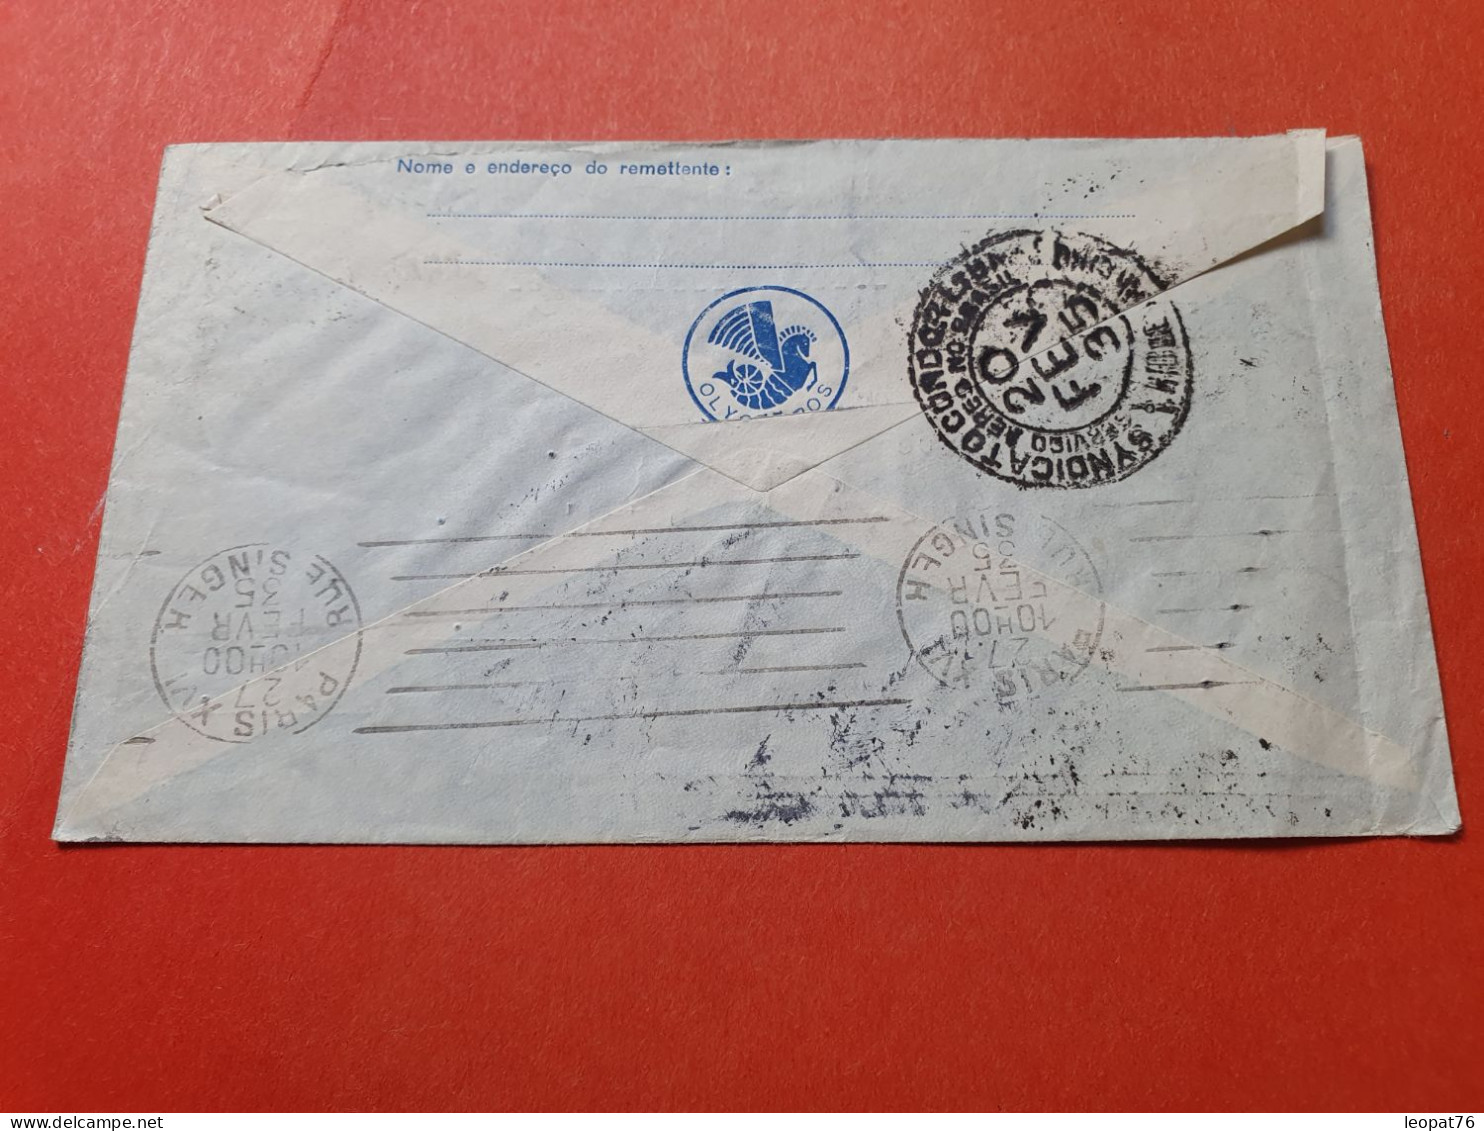 Brésil - Enveloppe Pour La France Par Avion Par Cie Lufthansa En 1935  - Réf 3373 - Storia Postale